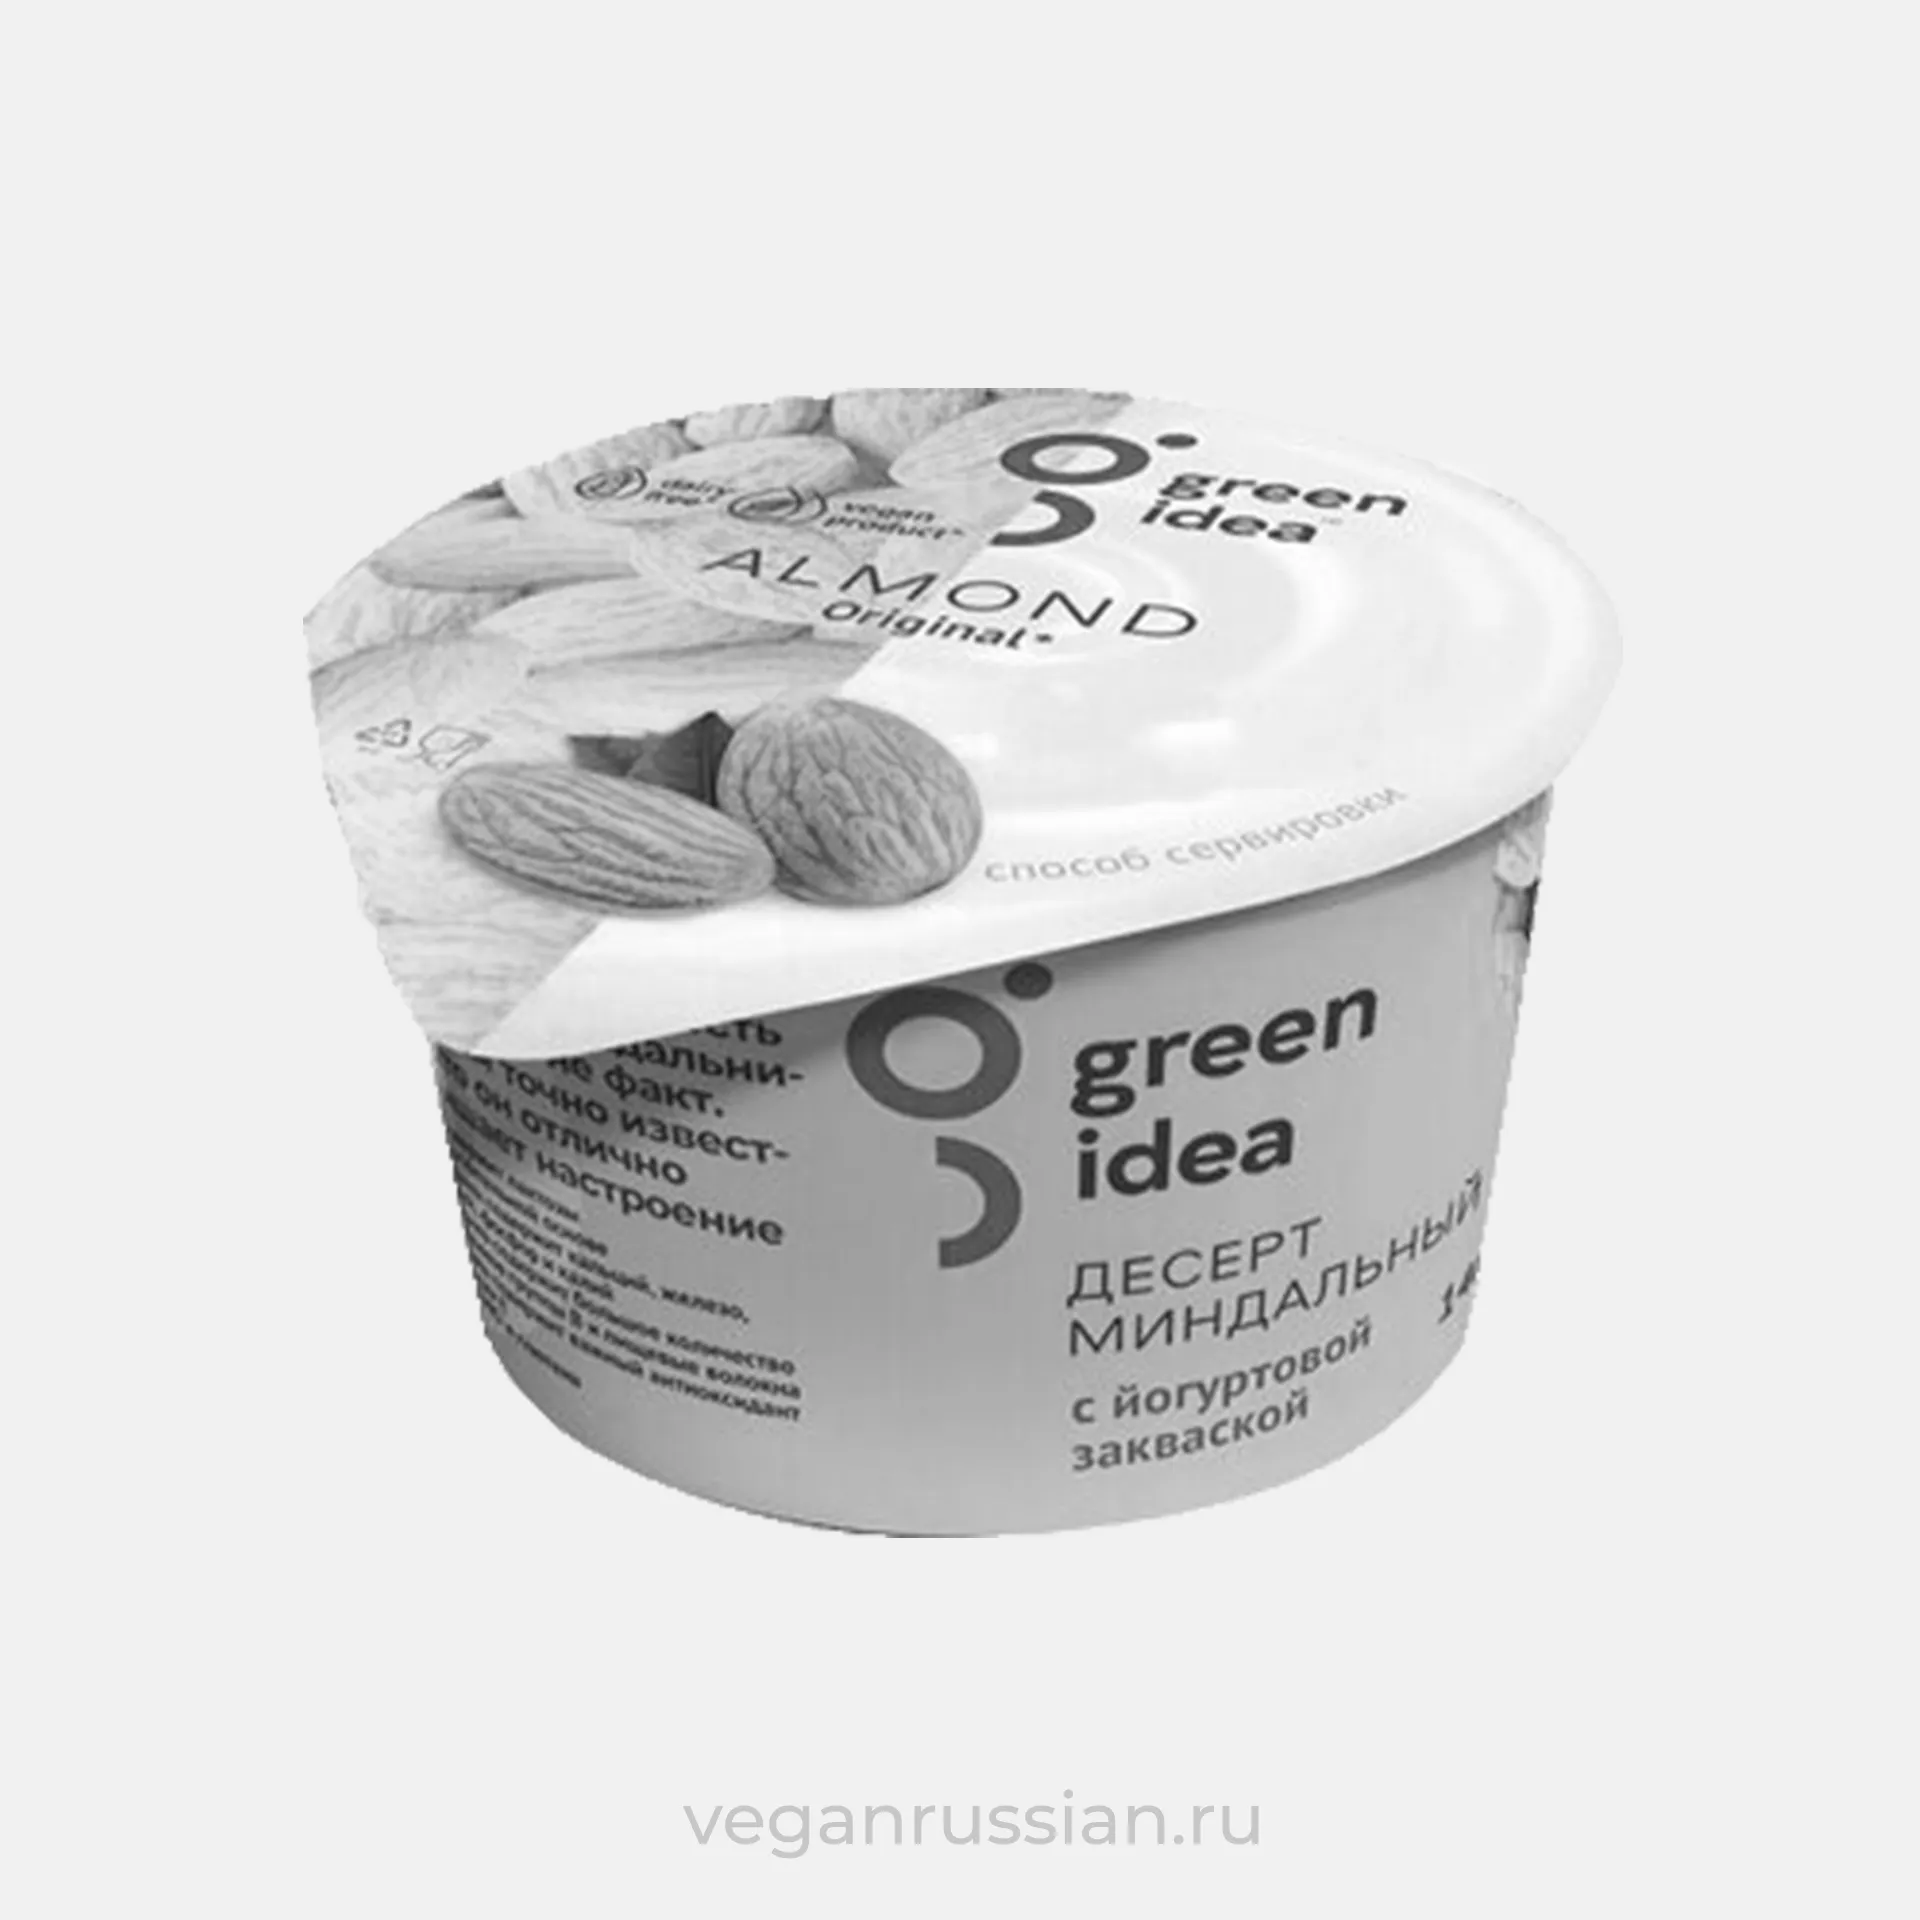 Архив: Миндальный йогурт натуральный Green Idea 140 г